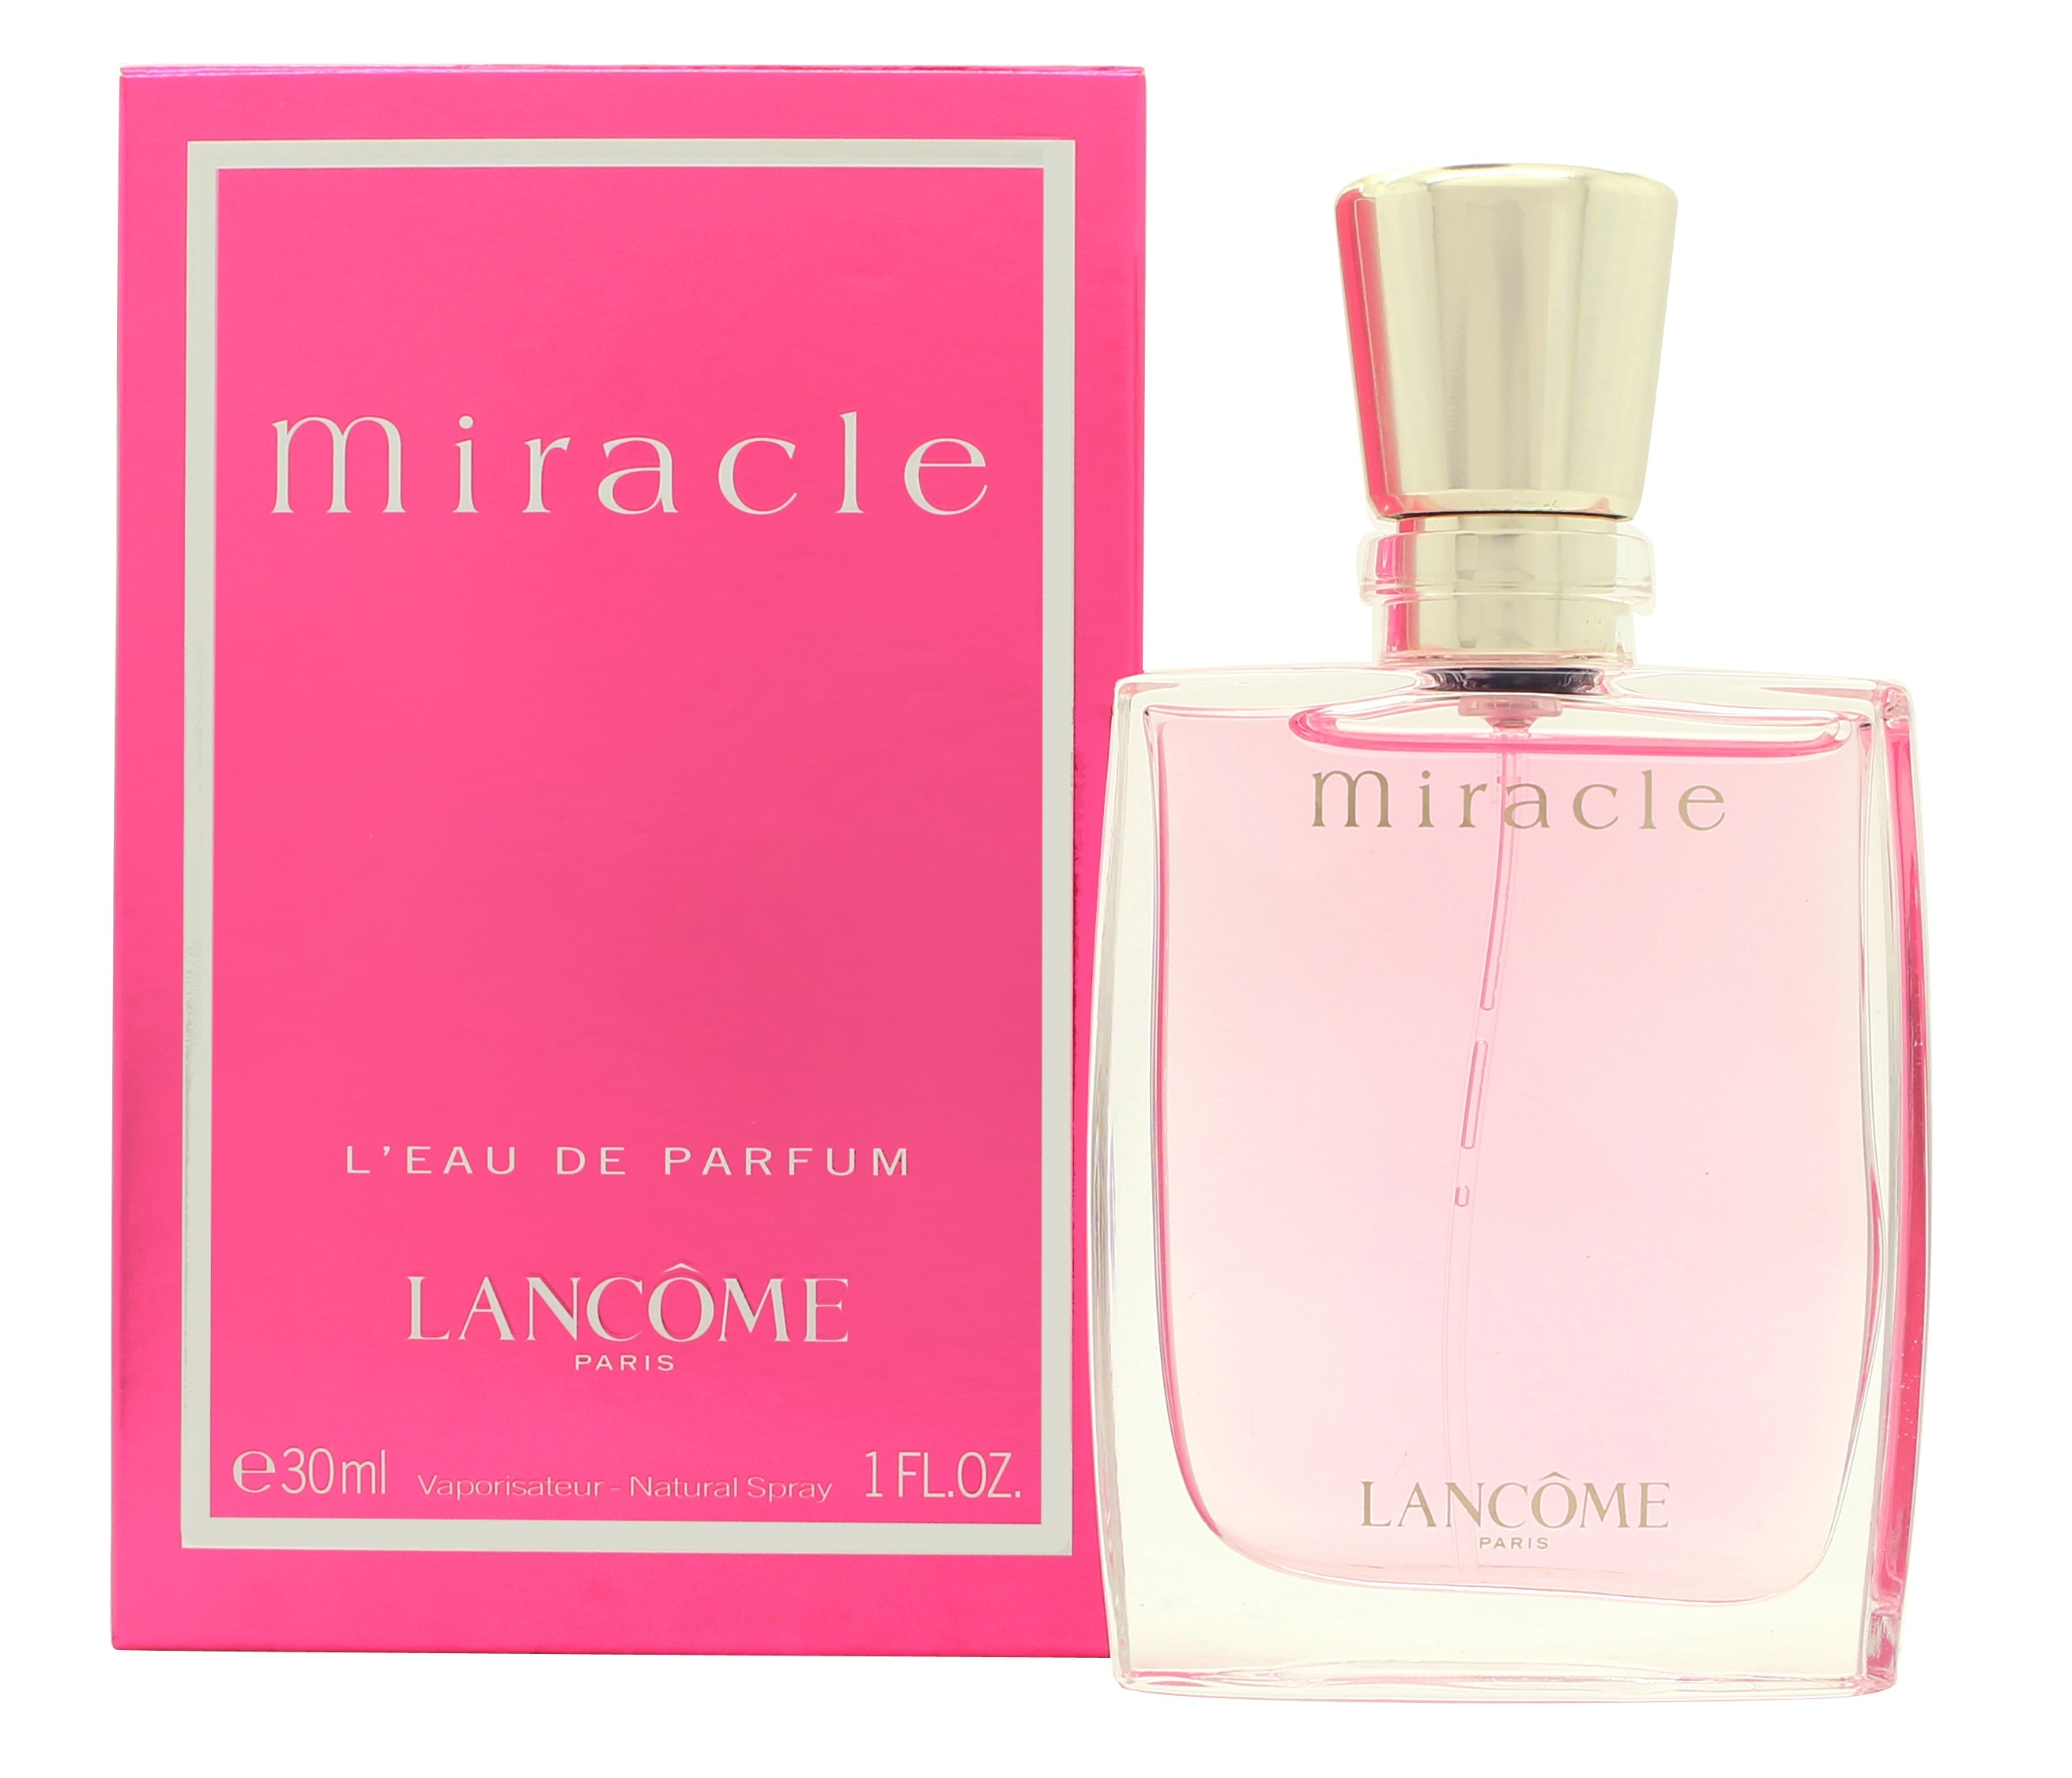 View Lancome Miracle Eau de Parfum 30ml Spray information